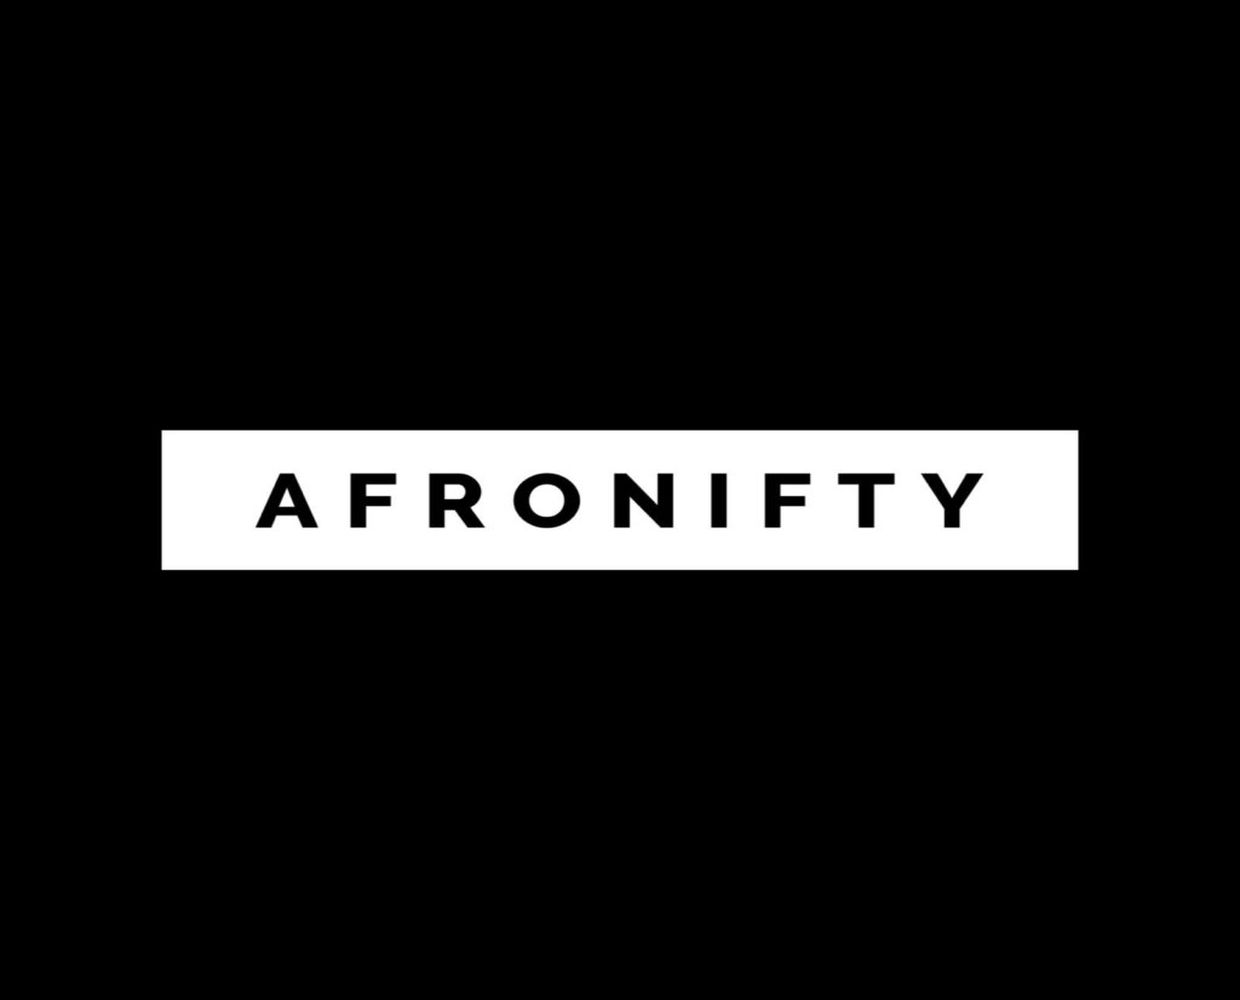 Hogyan nőtt fel az Afronifty az Afrobeats, hogy a legnagyobb NFT-piac lett Afrikában?